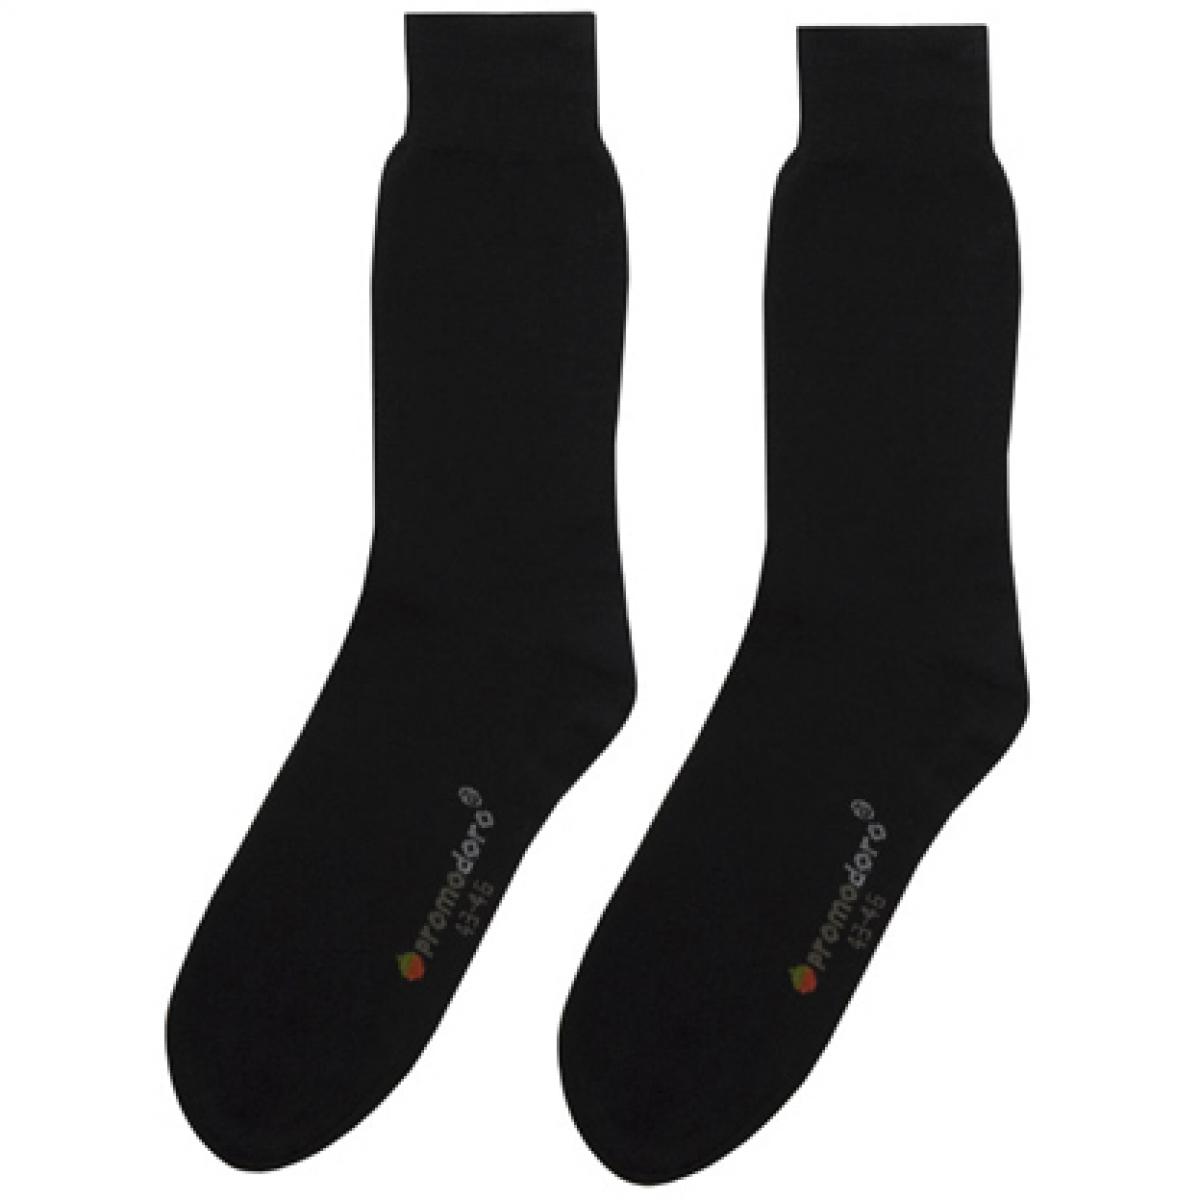 Hersteller: Promodoro Herstellernummer: 8100 Artikelbezeichnung: Herren Business-Socks (5er Pack) Farbe: Black